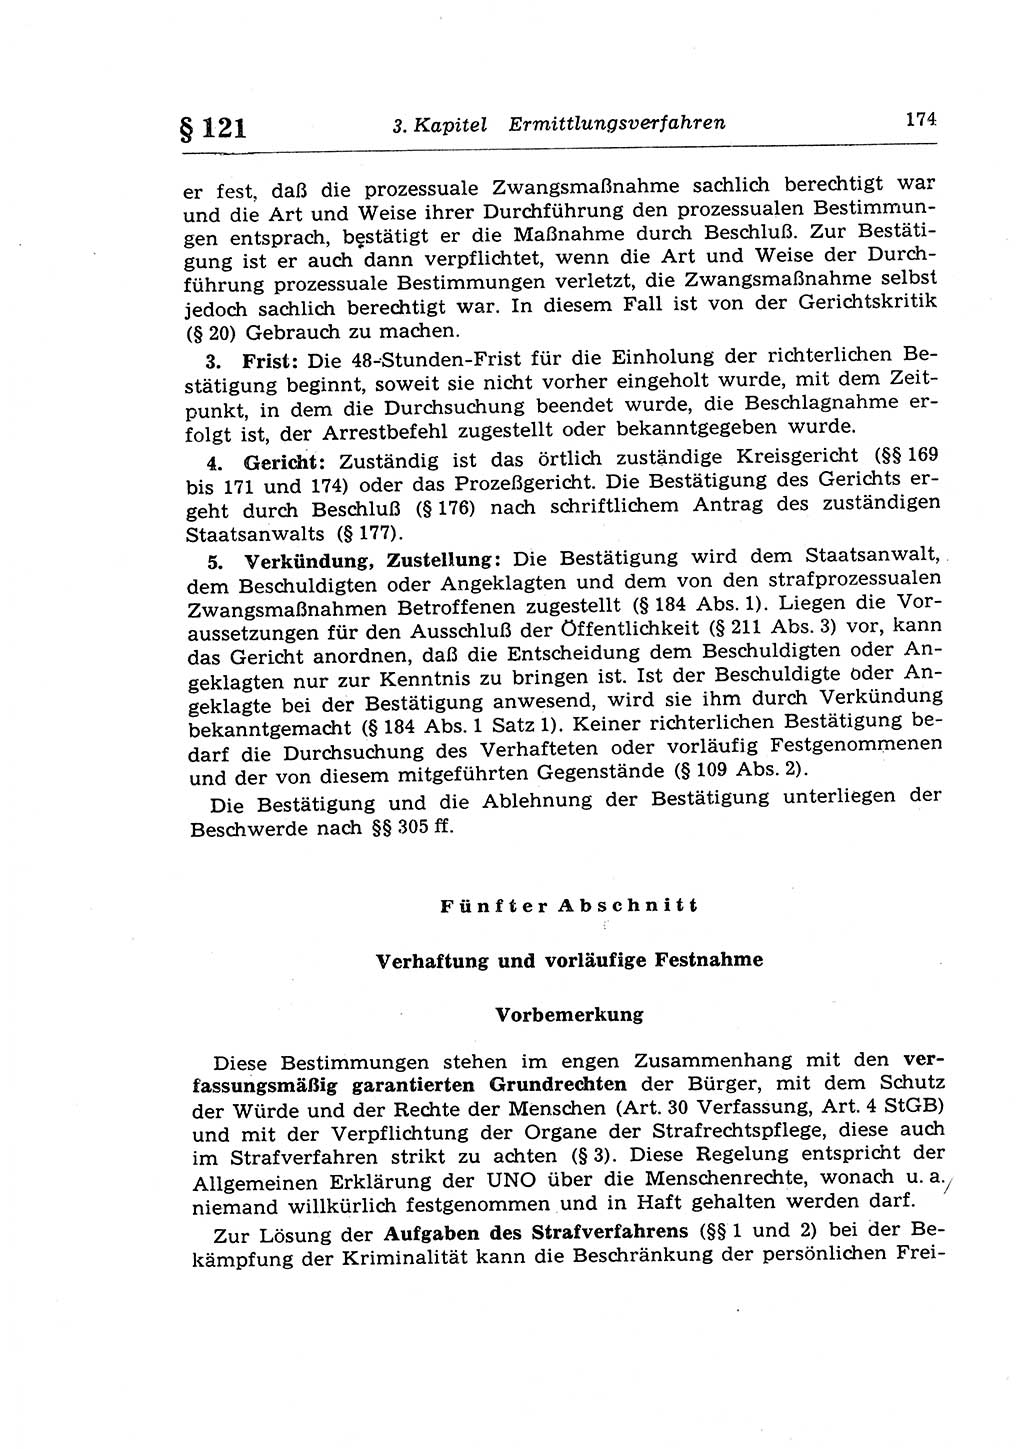 Strafprozeßrecht der DDR (Deutsche Demokratische Republik), Lehrkommentar zur Strafprozeßordnung (StPO) 1968, Seite 174 (Strafprozeßr. DDR Lehrkomm. StPO 19688, S. 174)